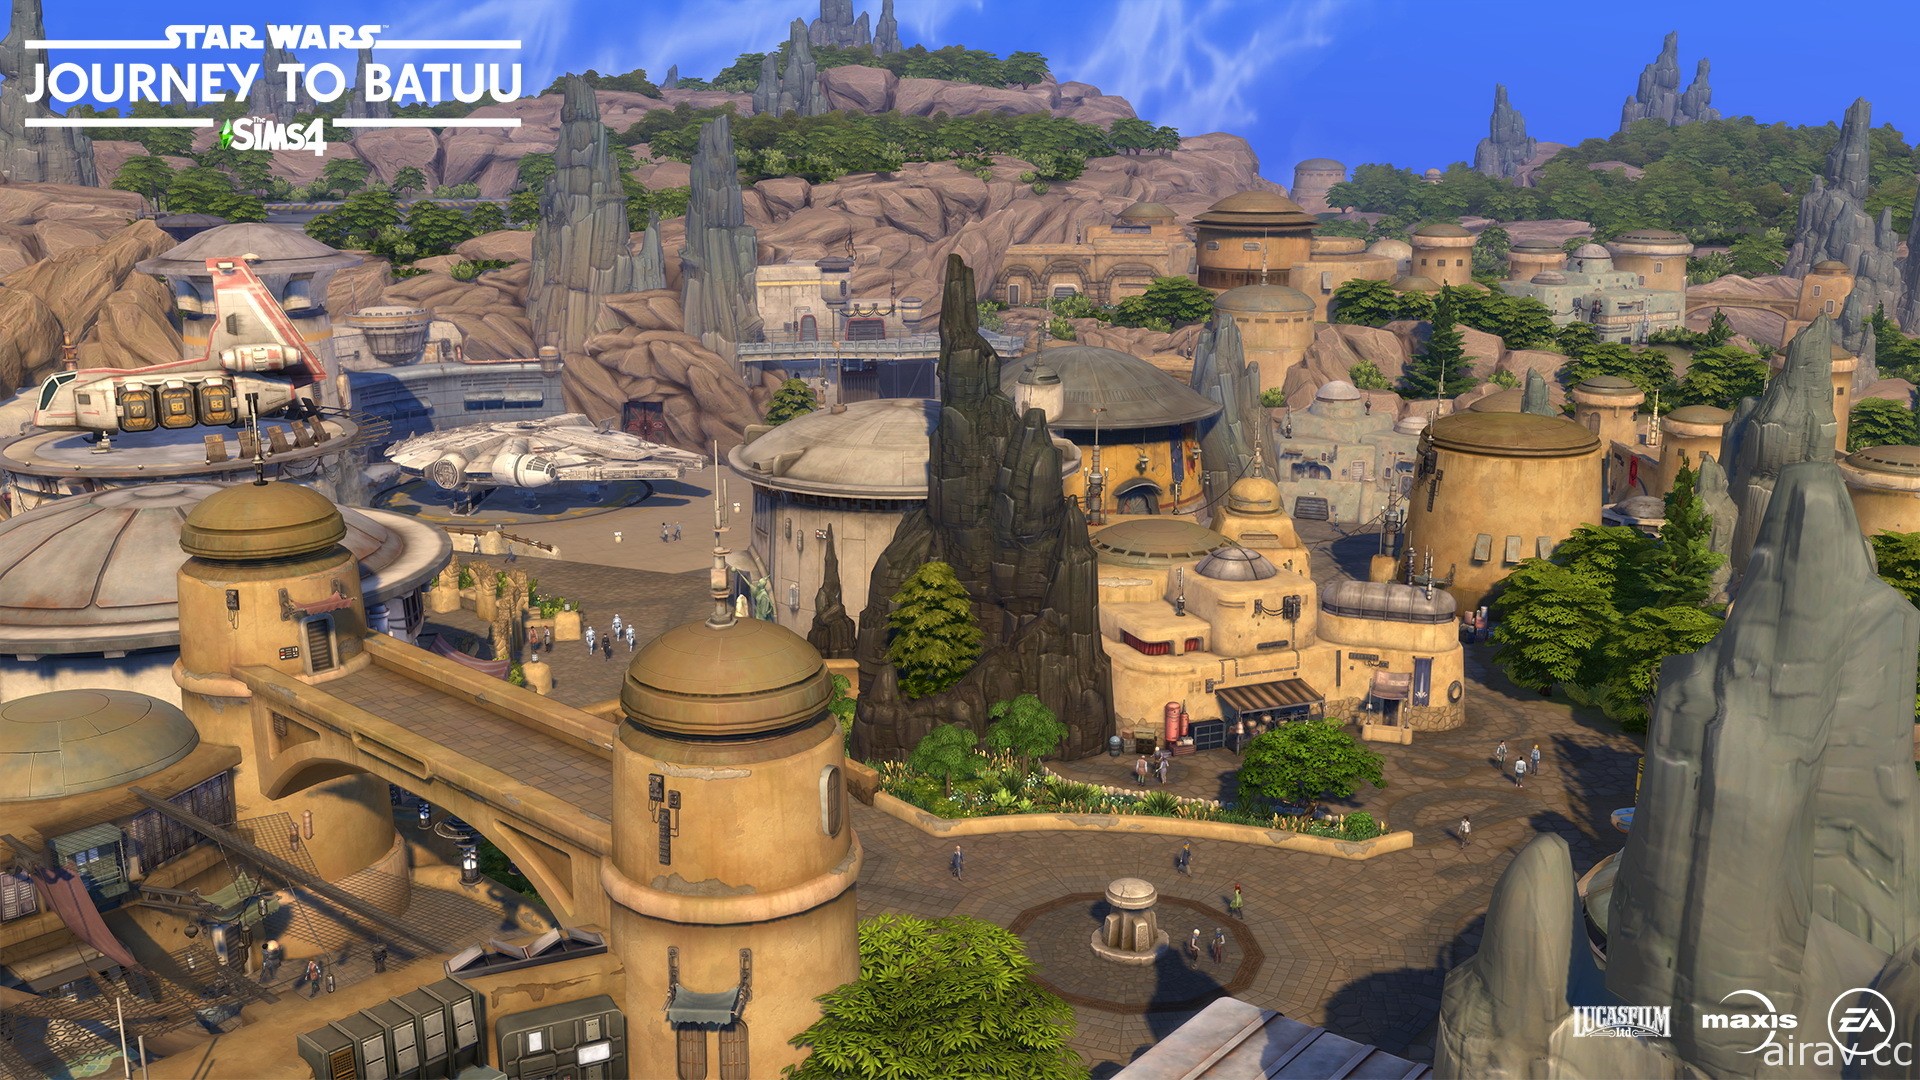 《模擬市民 4》釋出新擴充包《星際大戰 巴圖星之旅》新遊玩影片 搶先揭開新要素